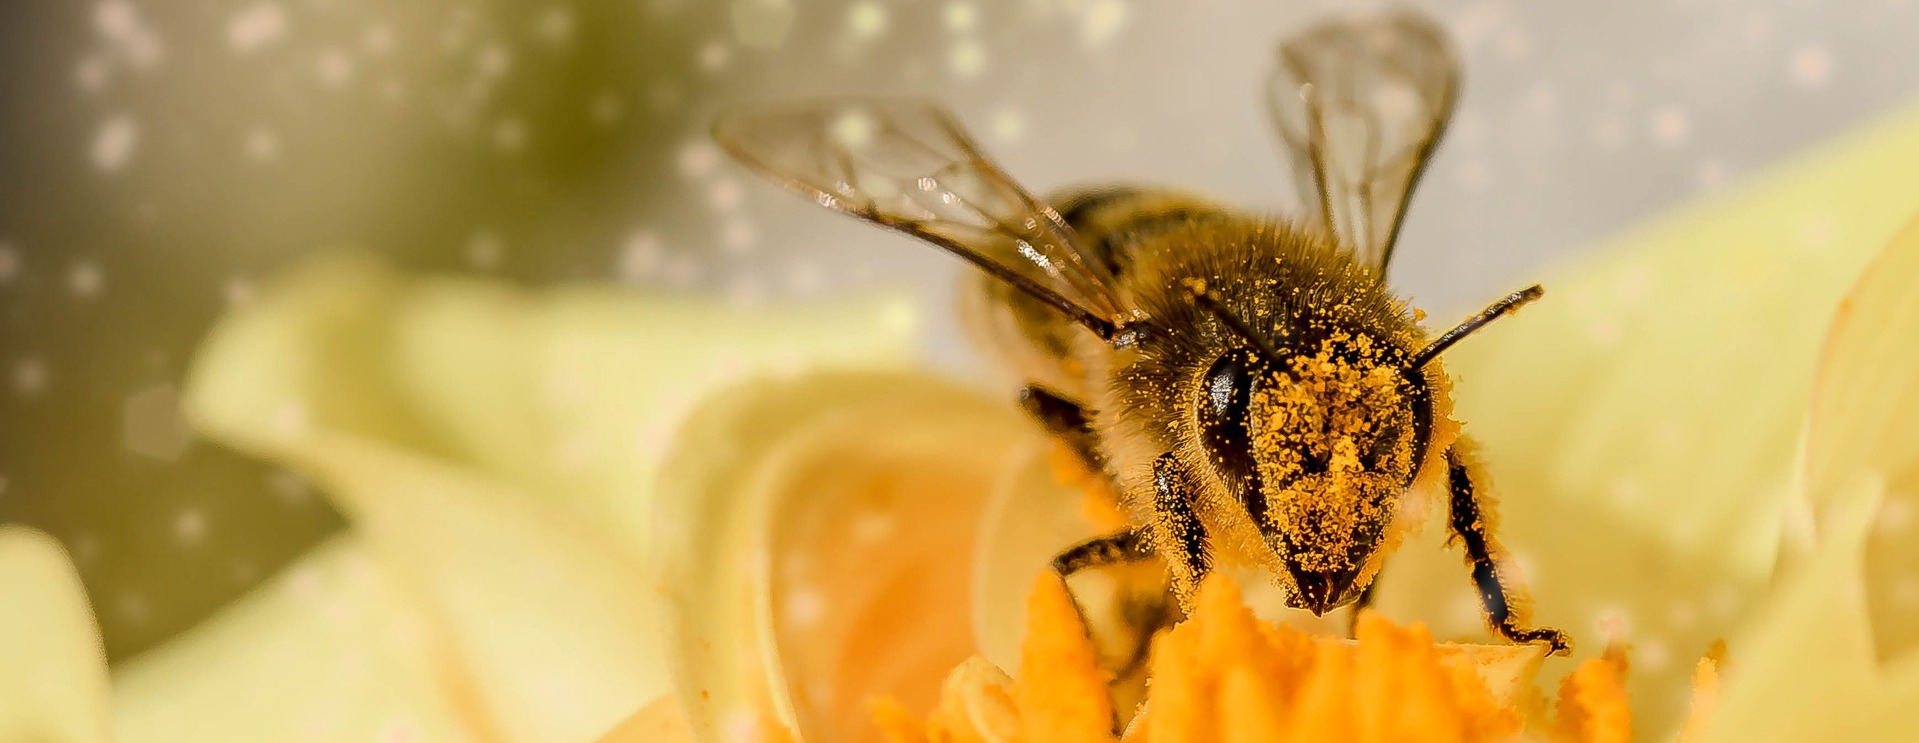 Пчеловоды Приморья осуществят три экспортных поставки в Казахстан 